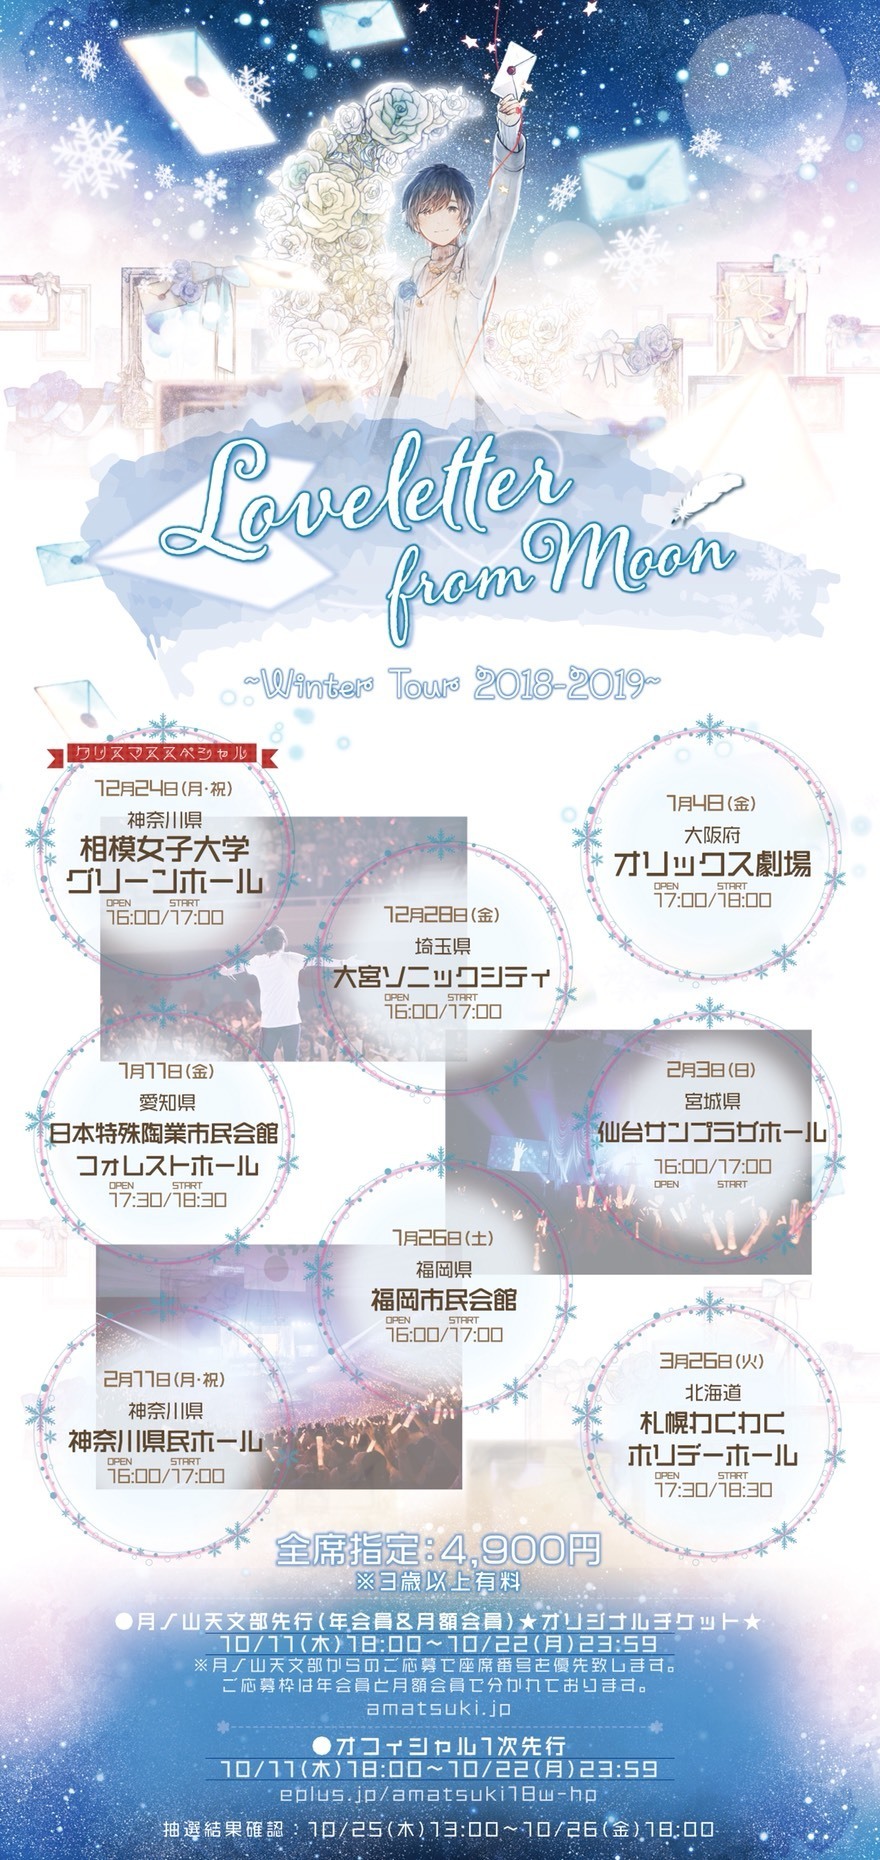 天月 あまつき Loveletter From Moon Winter Tour 18 19 チケット先行受付詳細発表 天月 Official Web Site